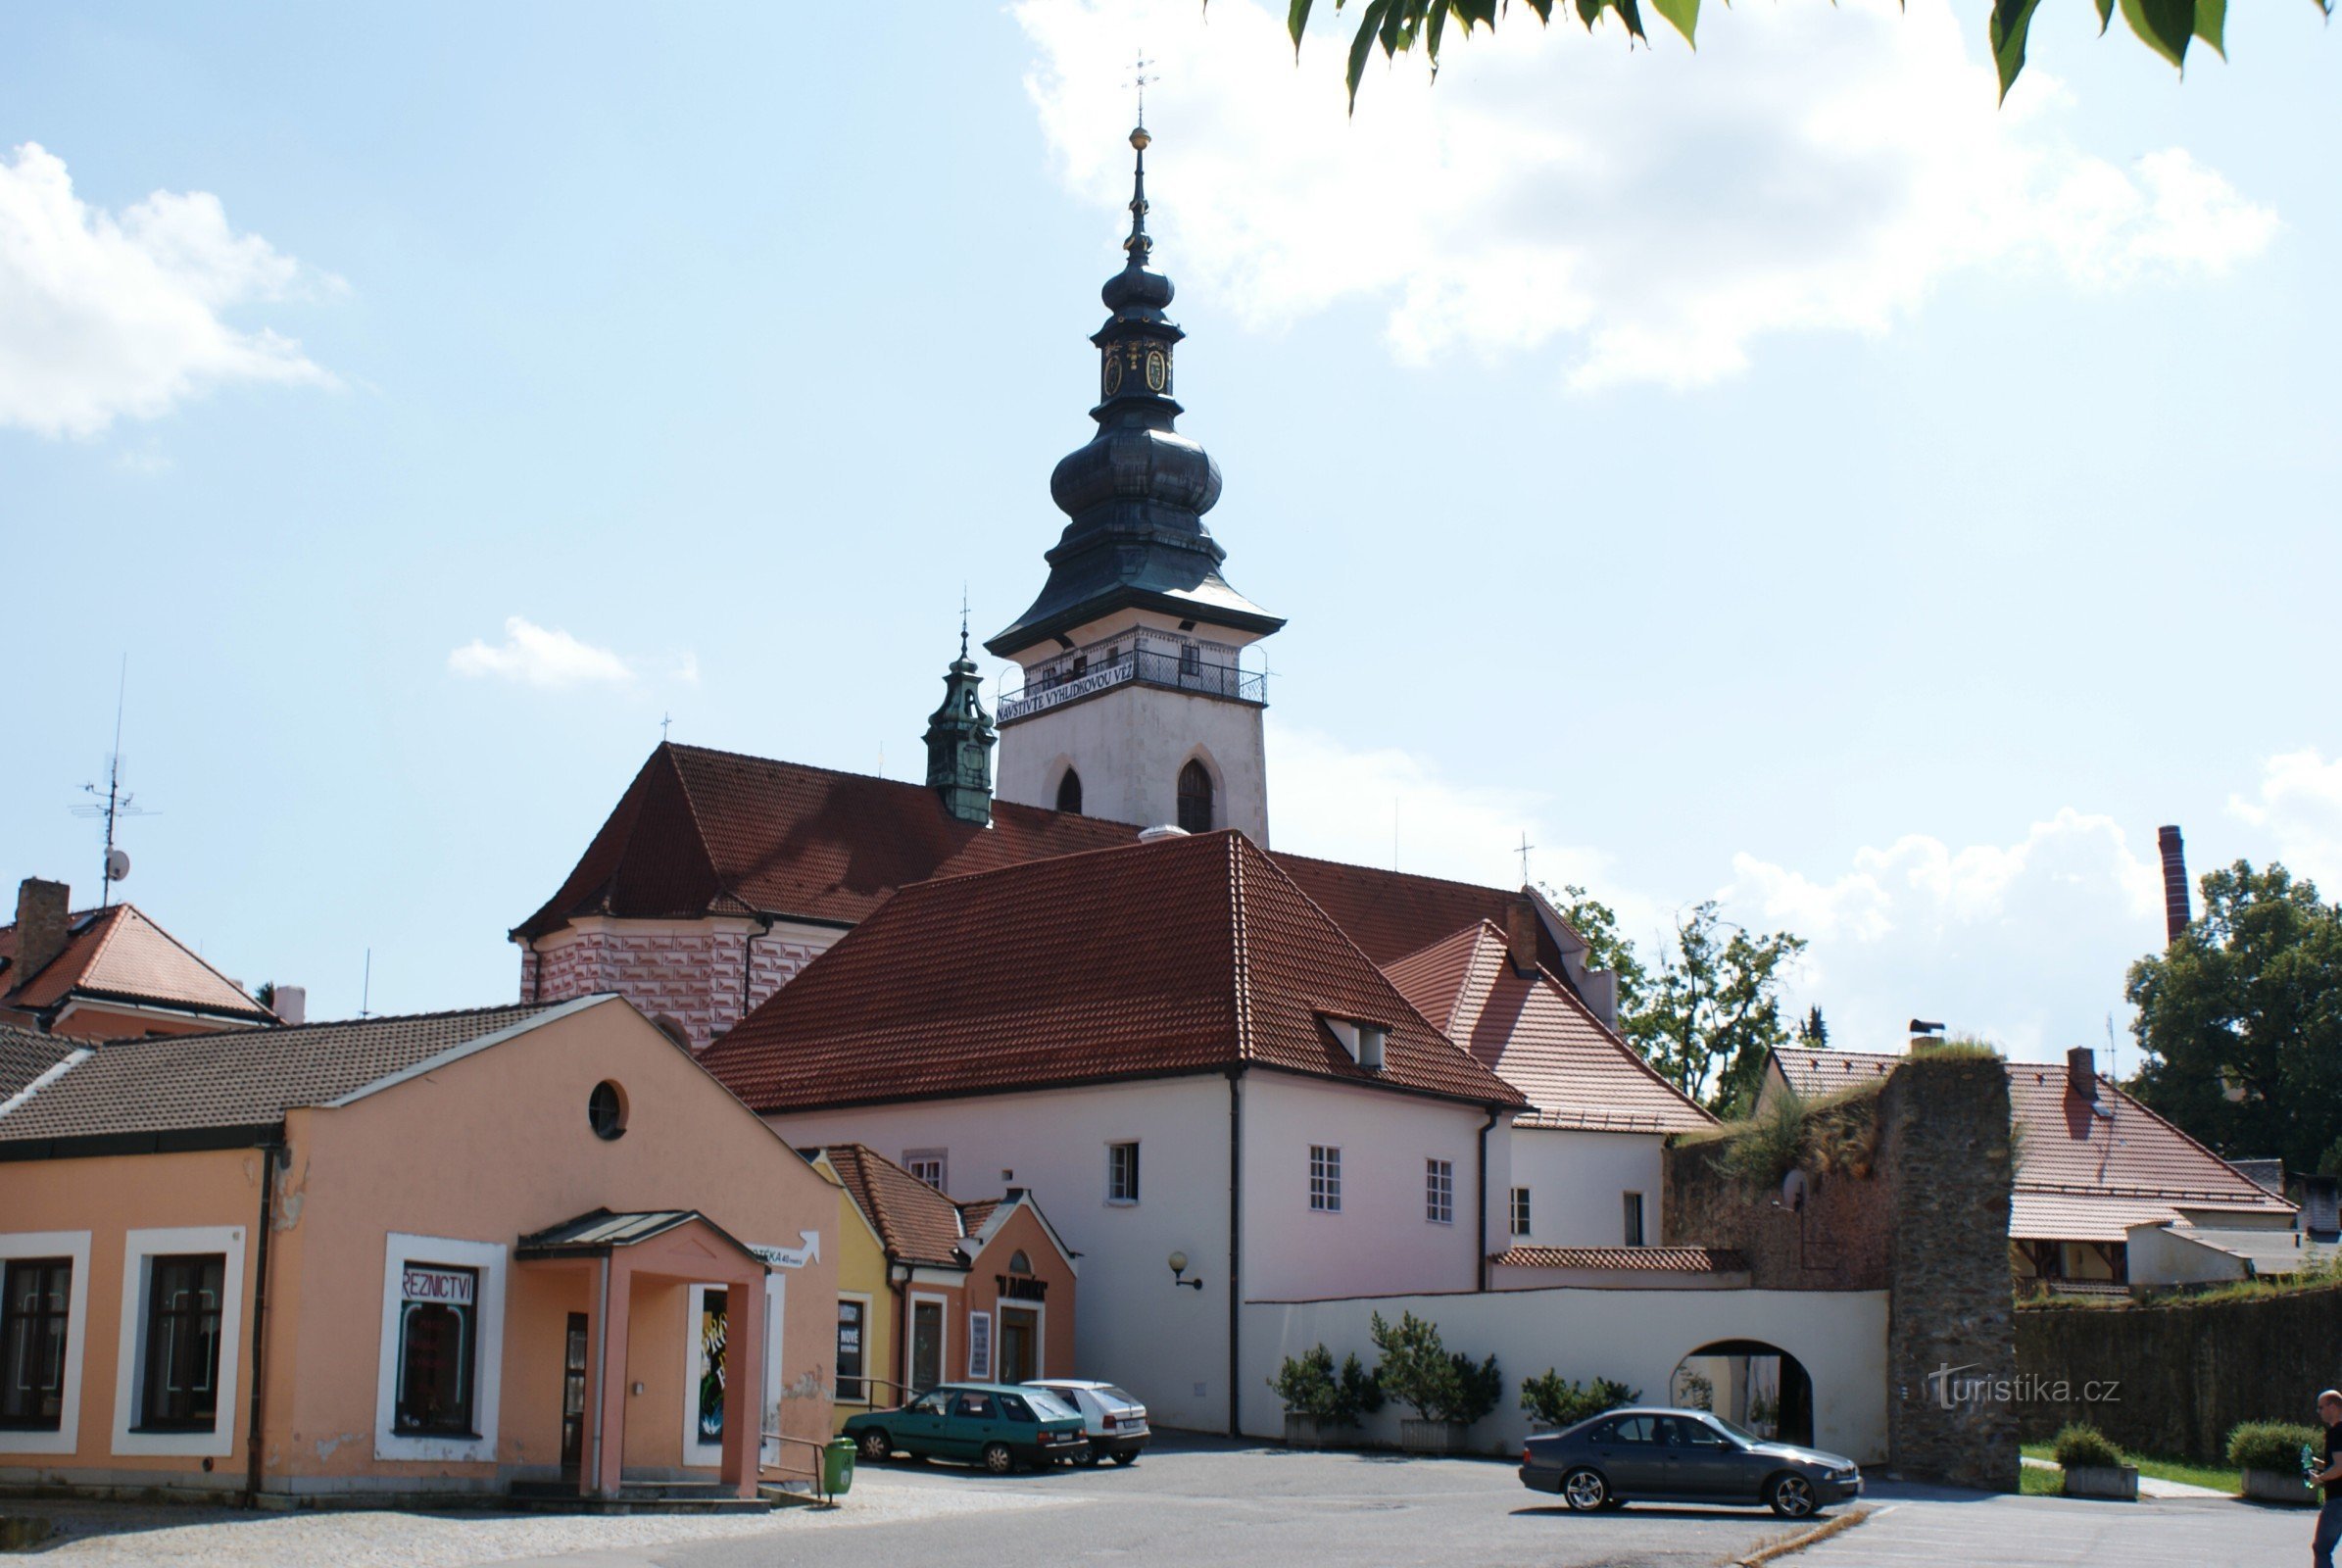 Pelhřimov - Basiliek van St. Bartholomeus met een uitkijktoren